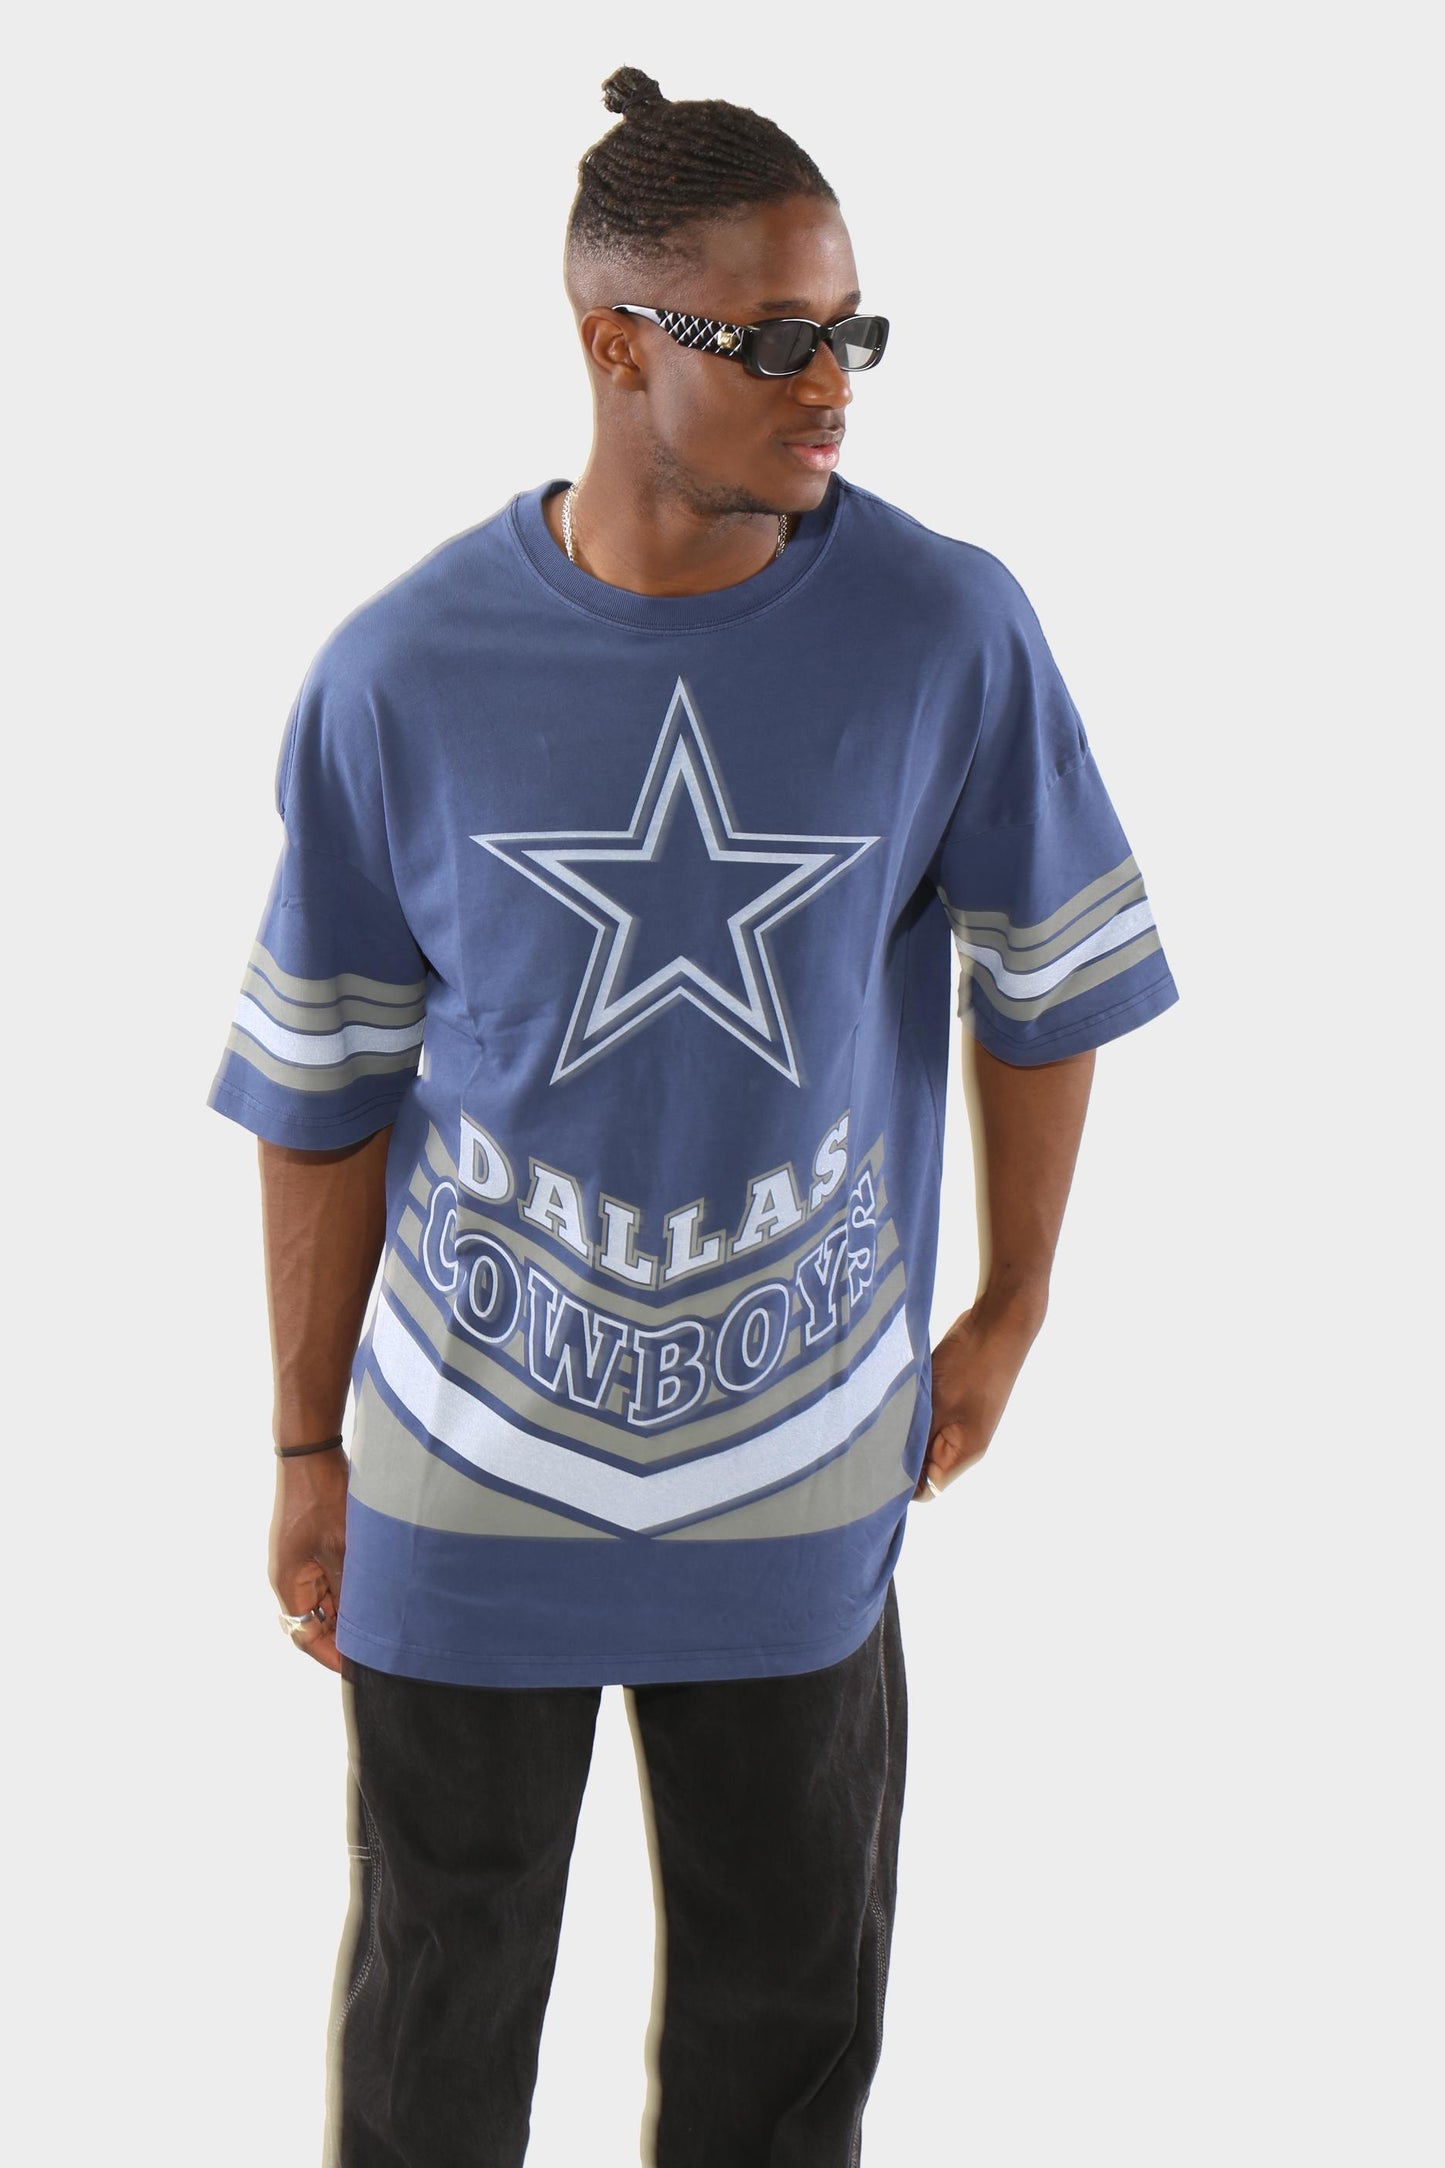 M&N Dallas Cowboys Touchdown Tee Vintage Blue